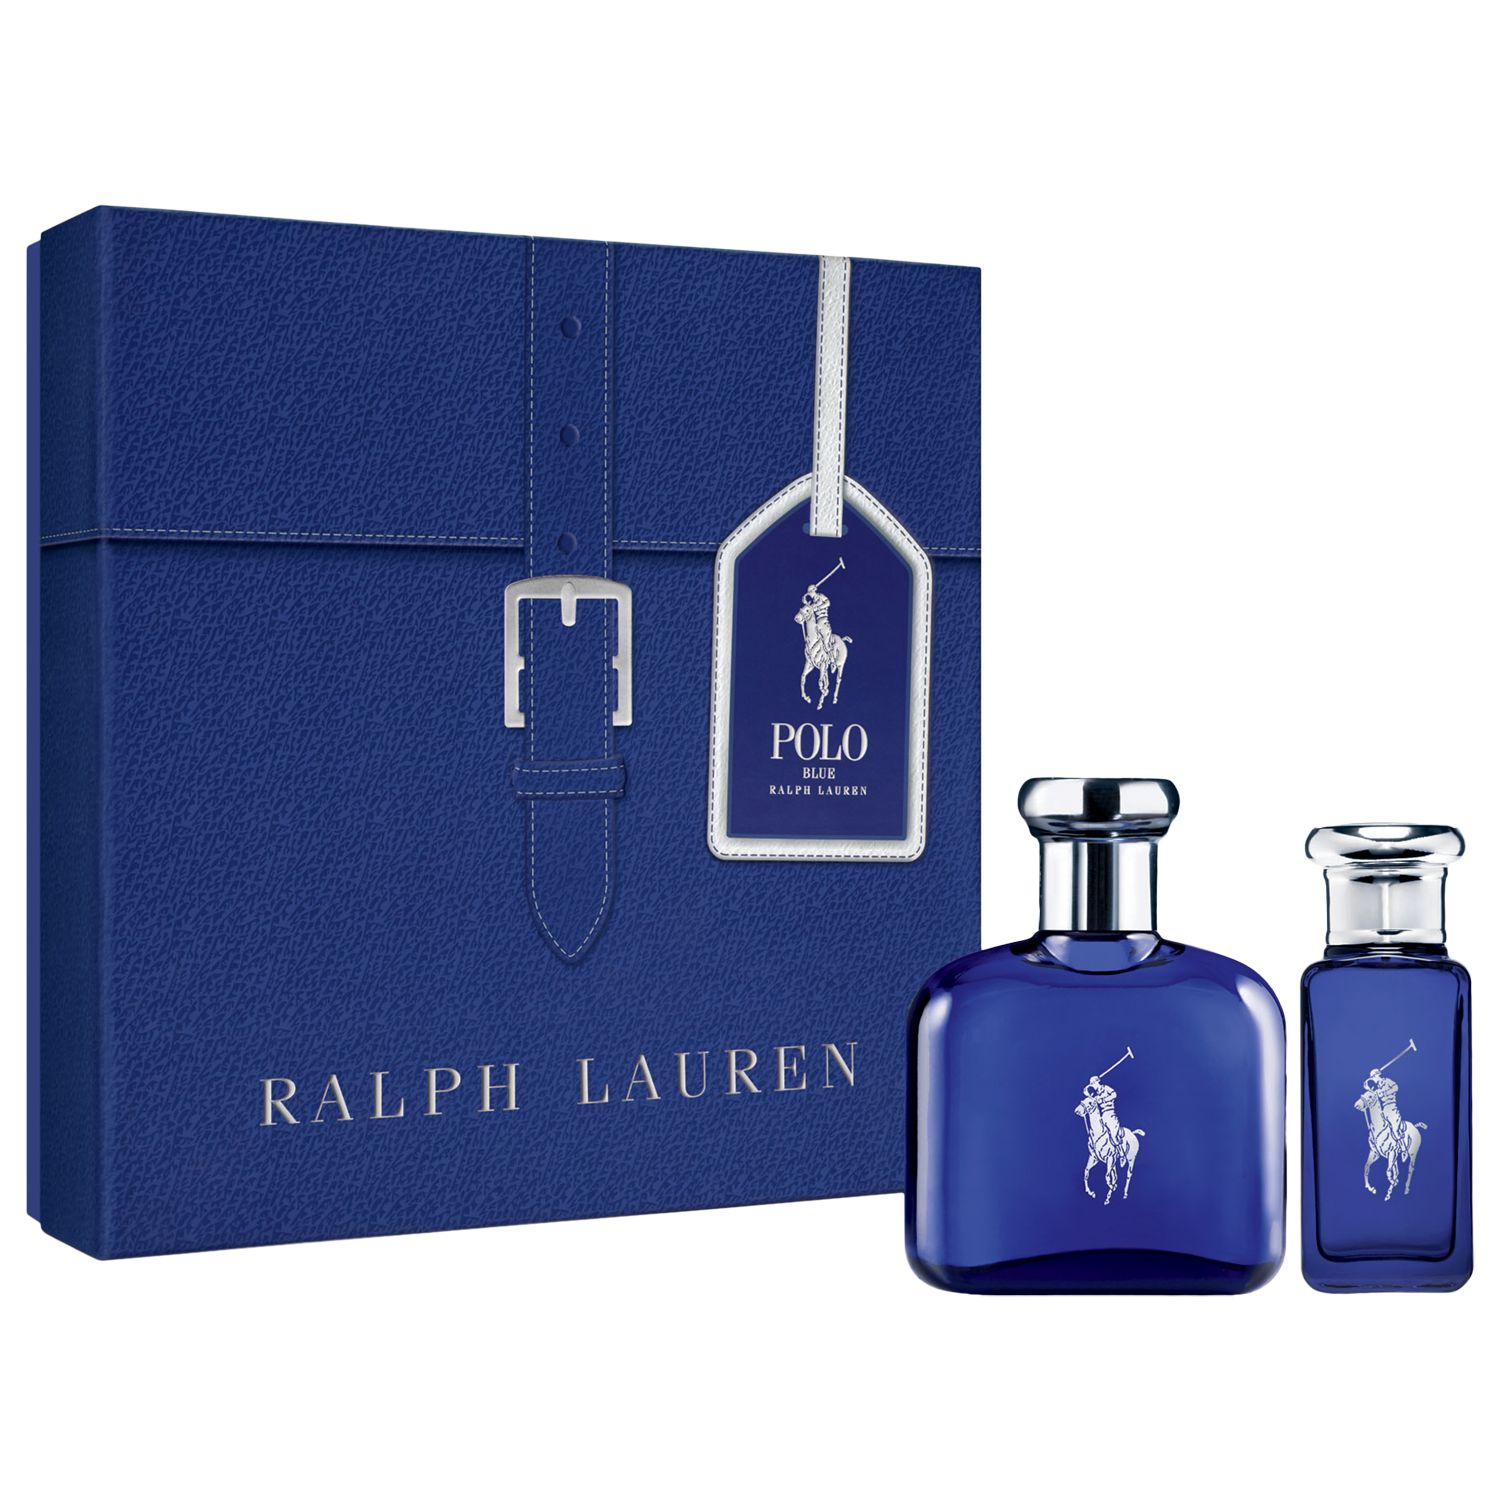 Ralph Lauren Polo Blue Eau de Toilette 75ml Gift Set